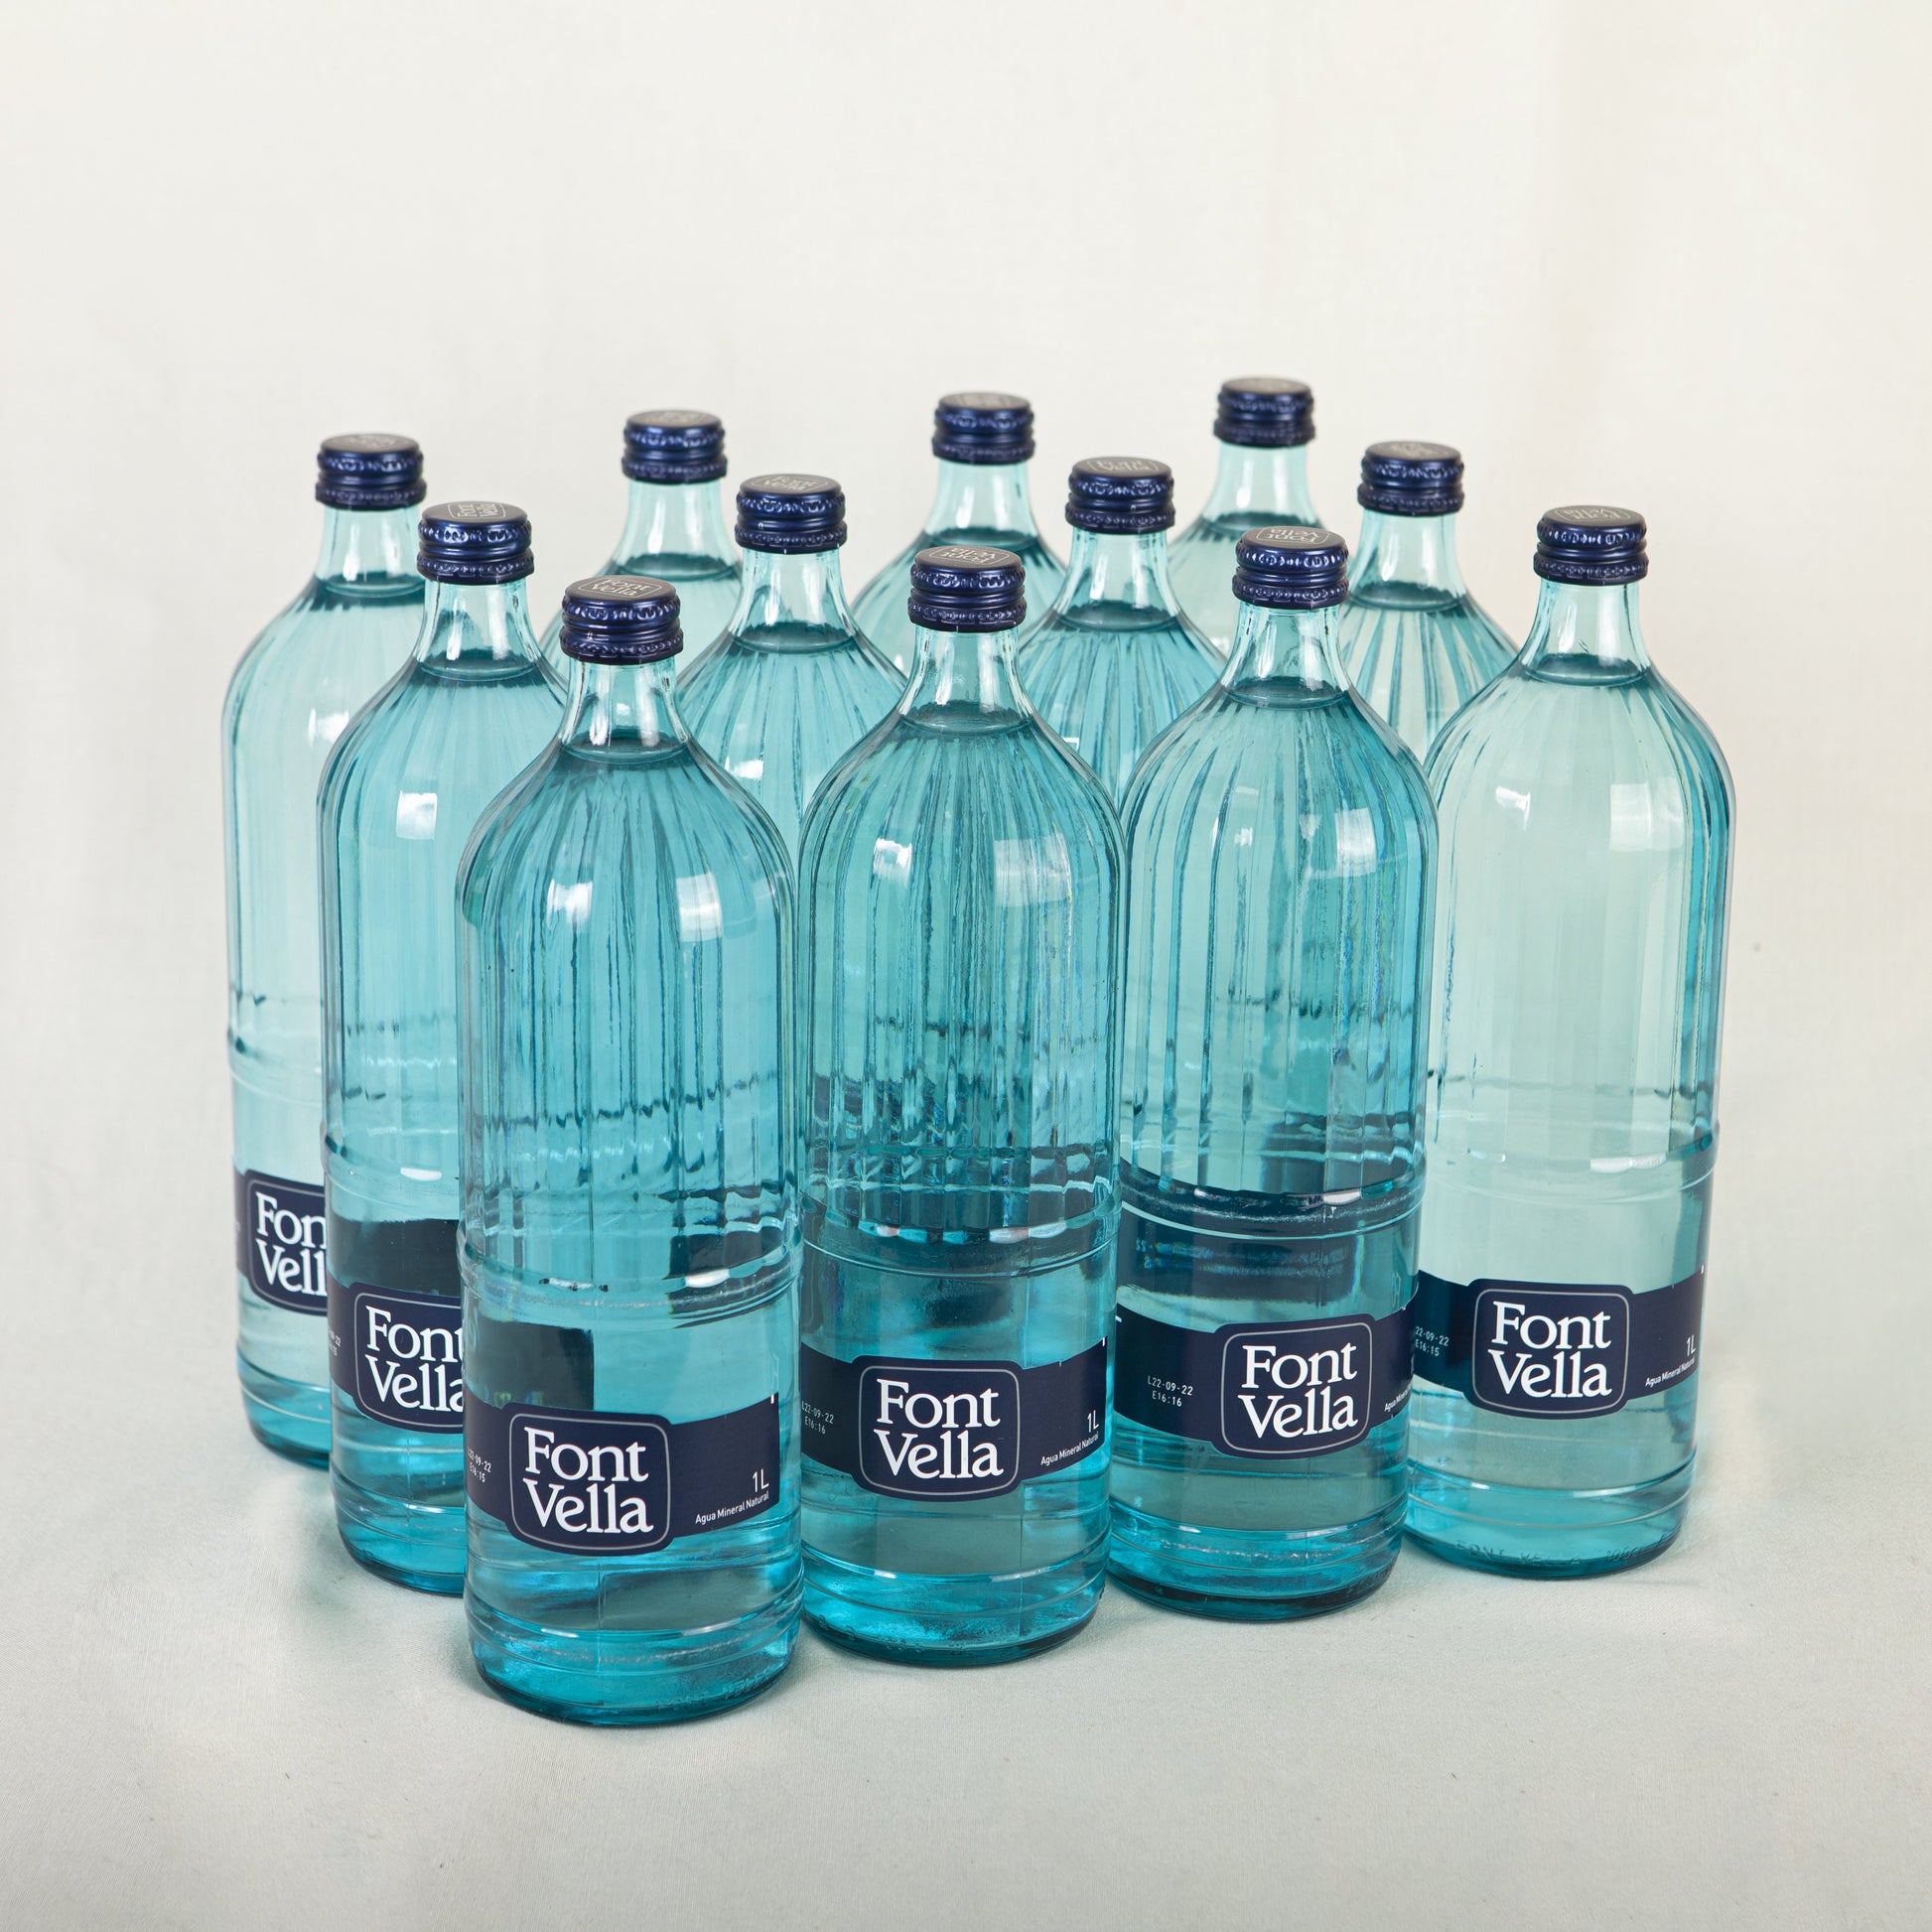 Font Vella sirve su botella de 1,5L hecha totalmente con plástico